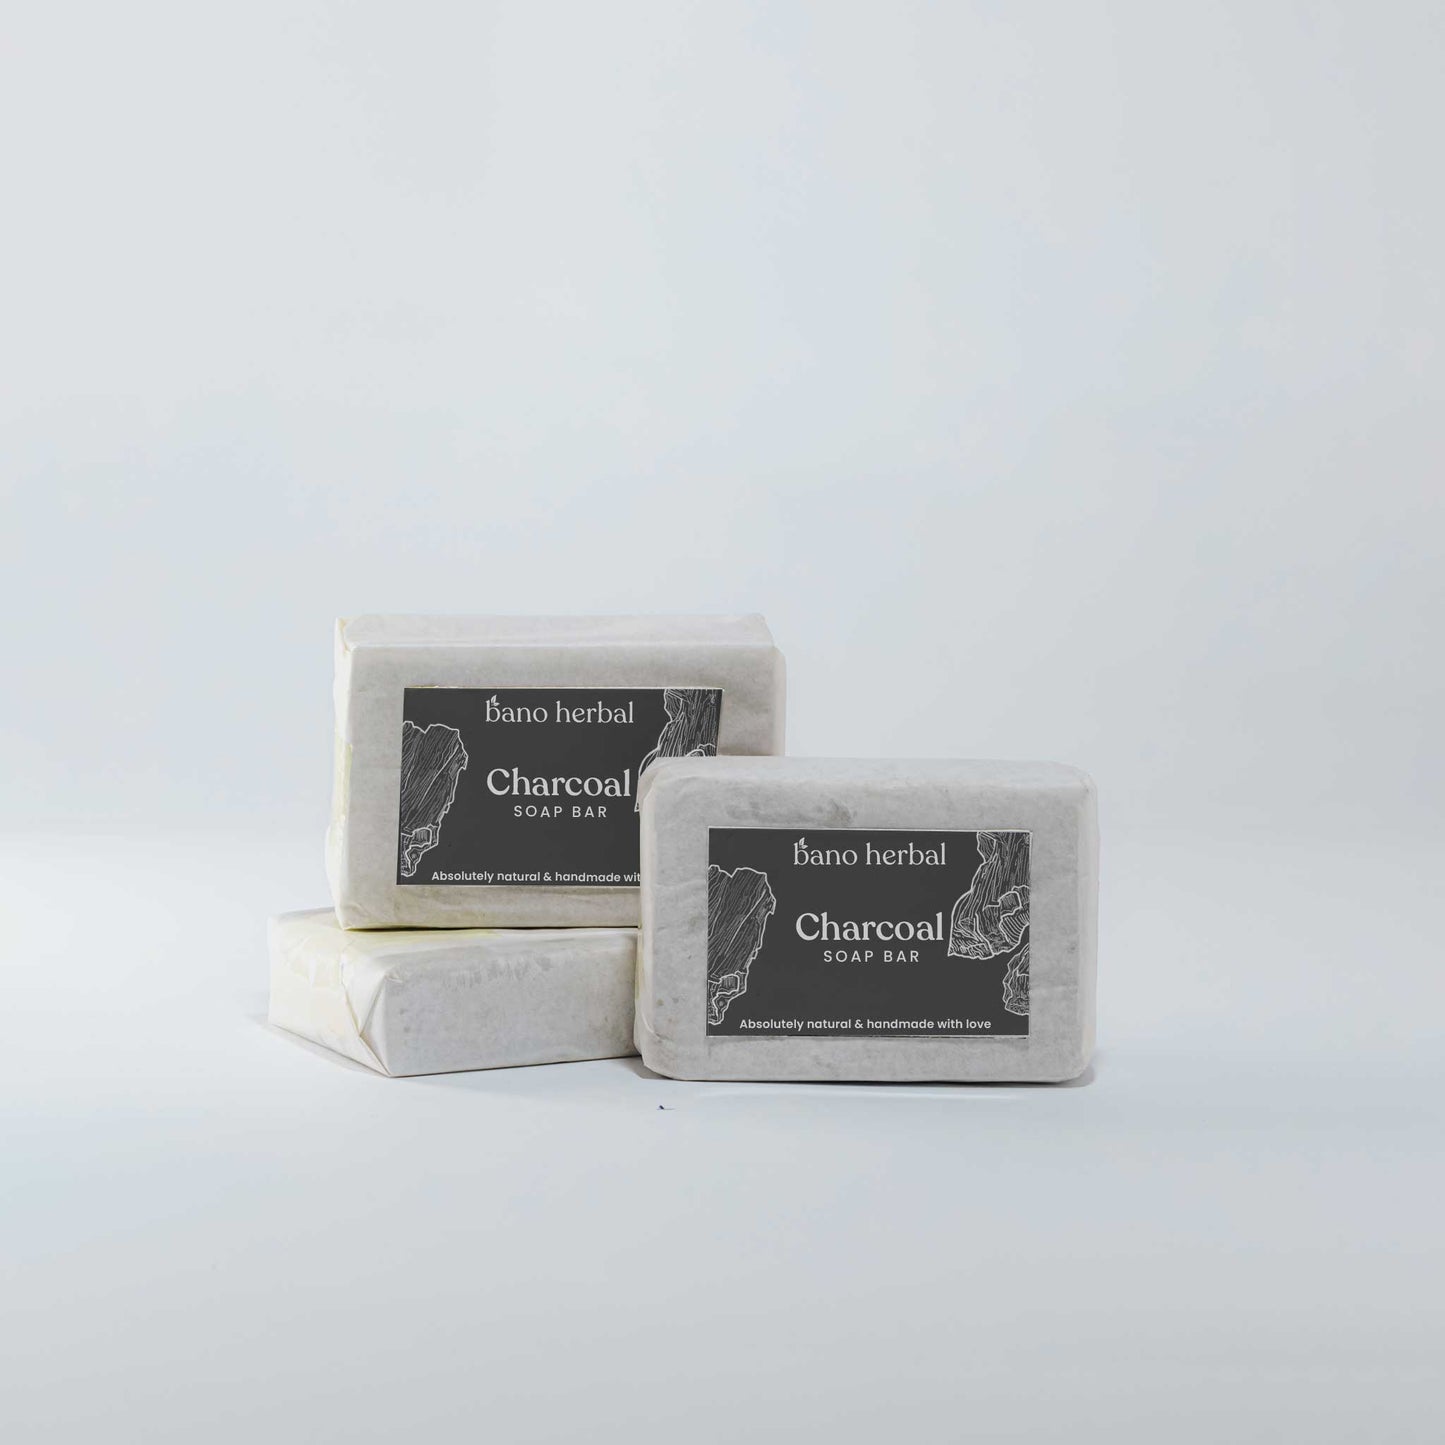 Charcoal - Soap Bar